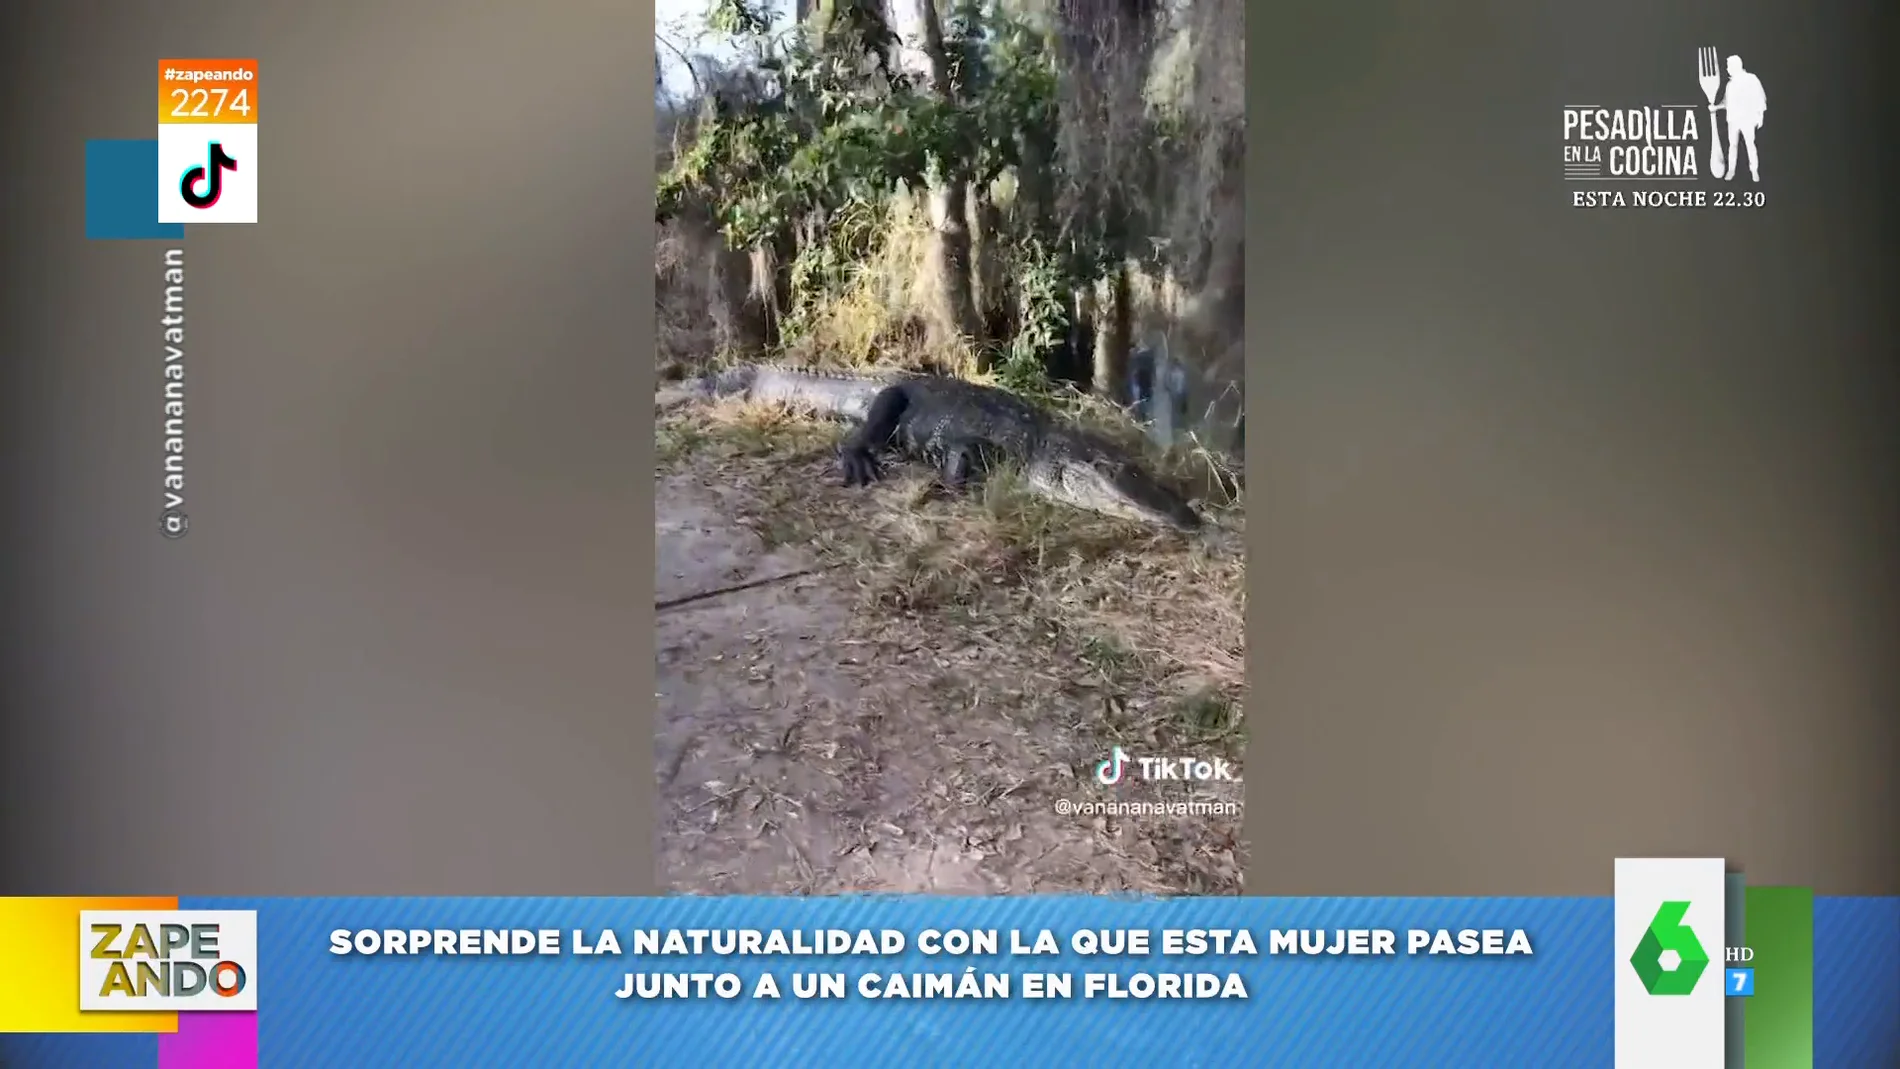 Una mujer sale a pasear en Florida y se encuentra con un caimán